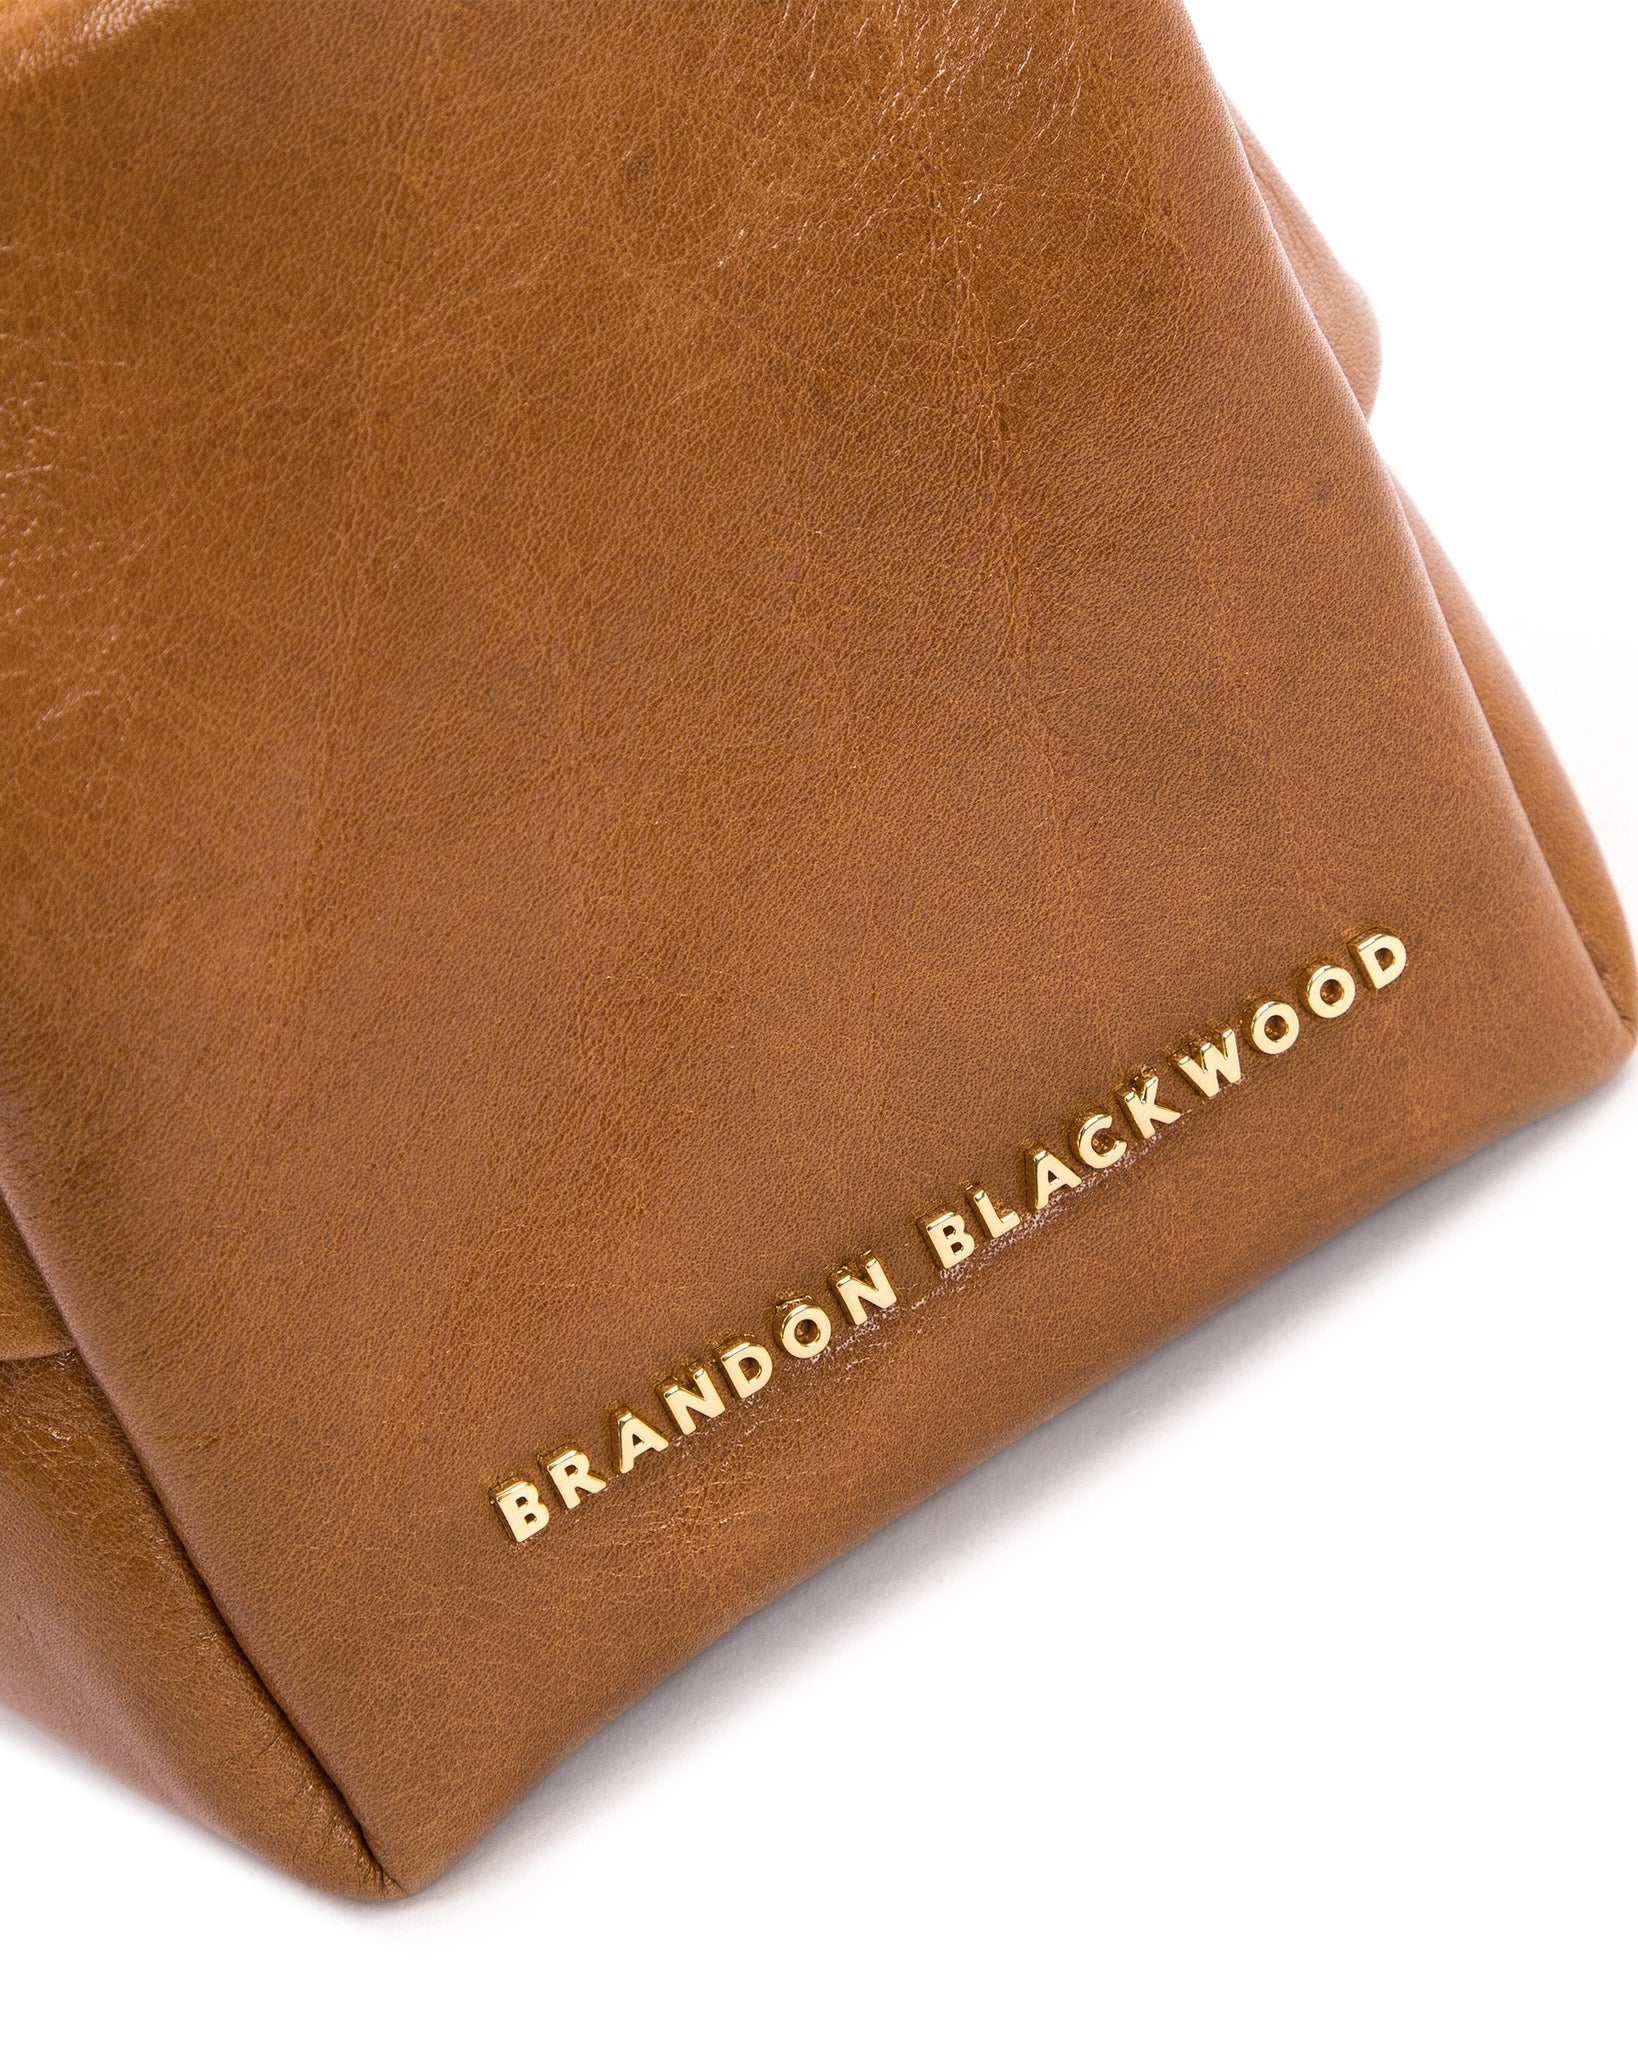 Brandon Blackwood New York - Valentina Shoulder Bag - Tan Cracked Leather